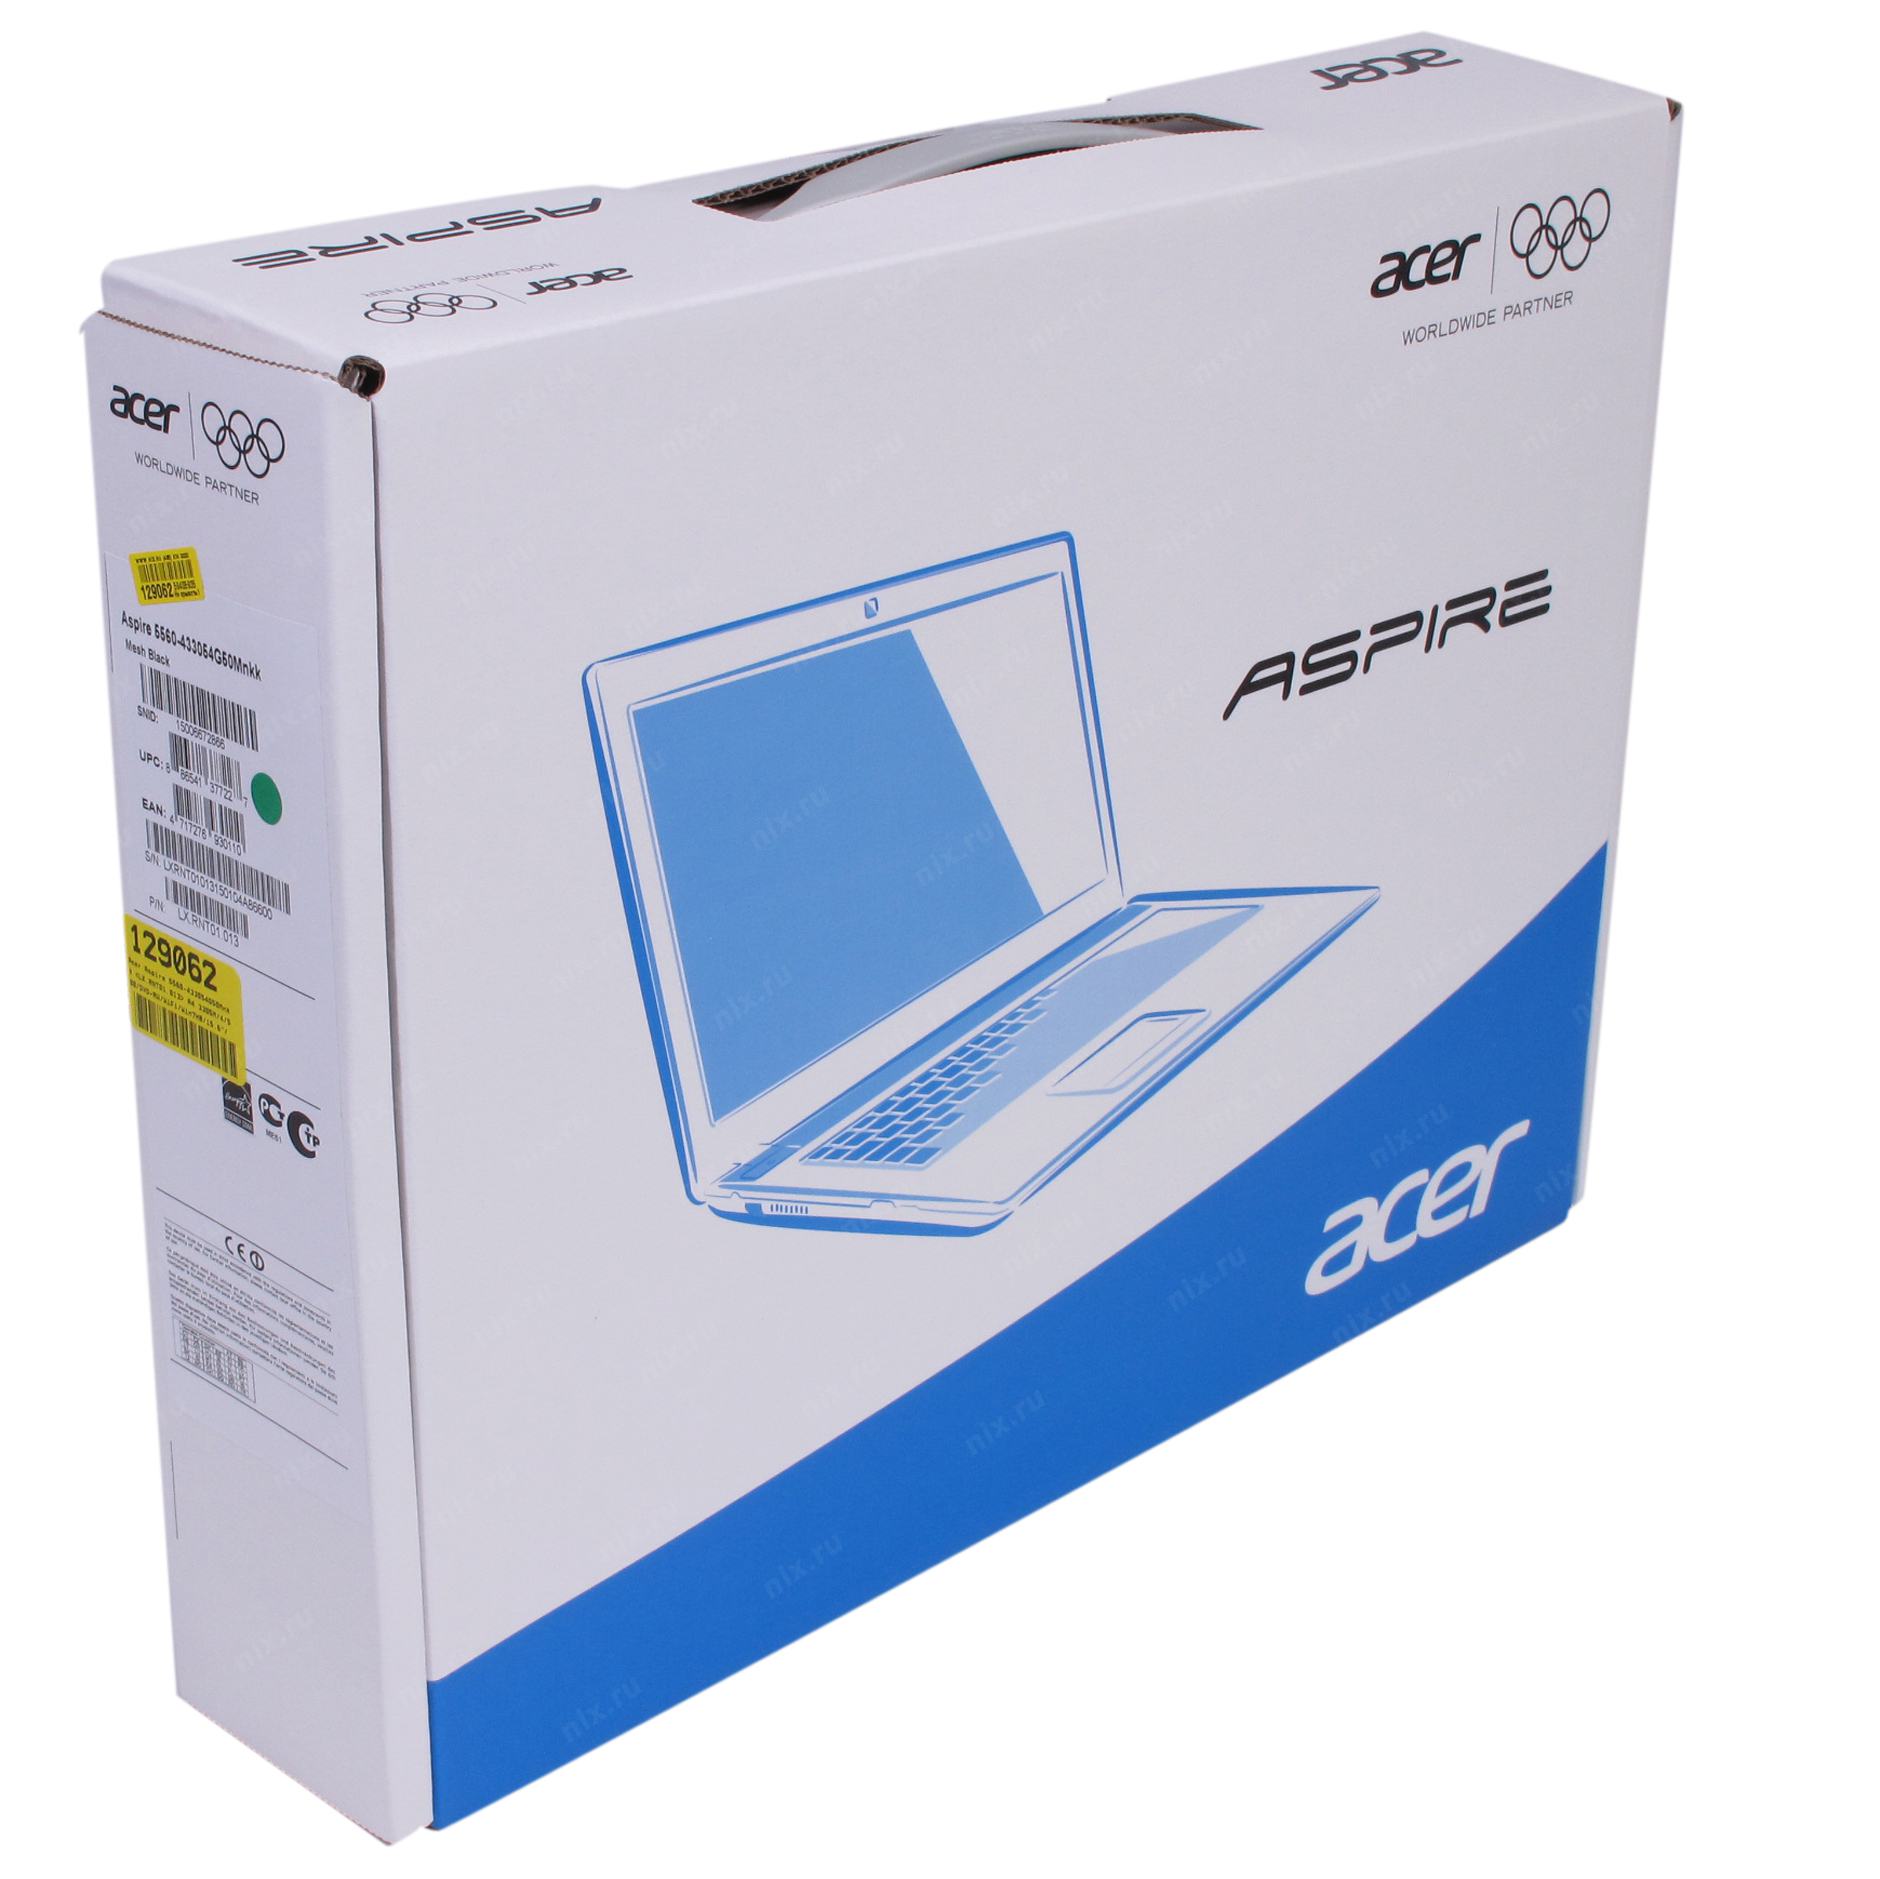 Купить Ноутбук Acer Aspire 5560